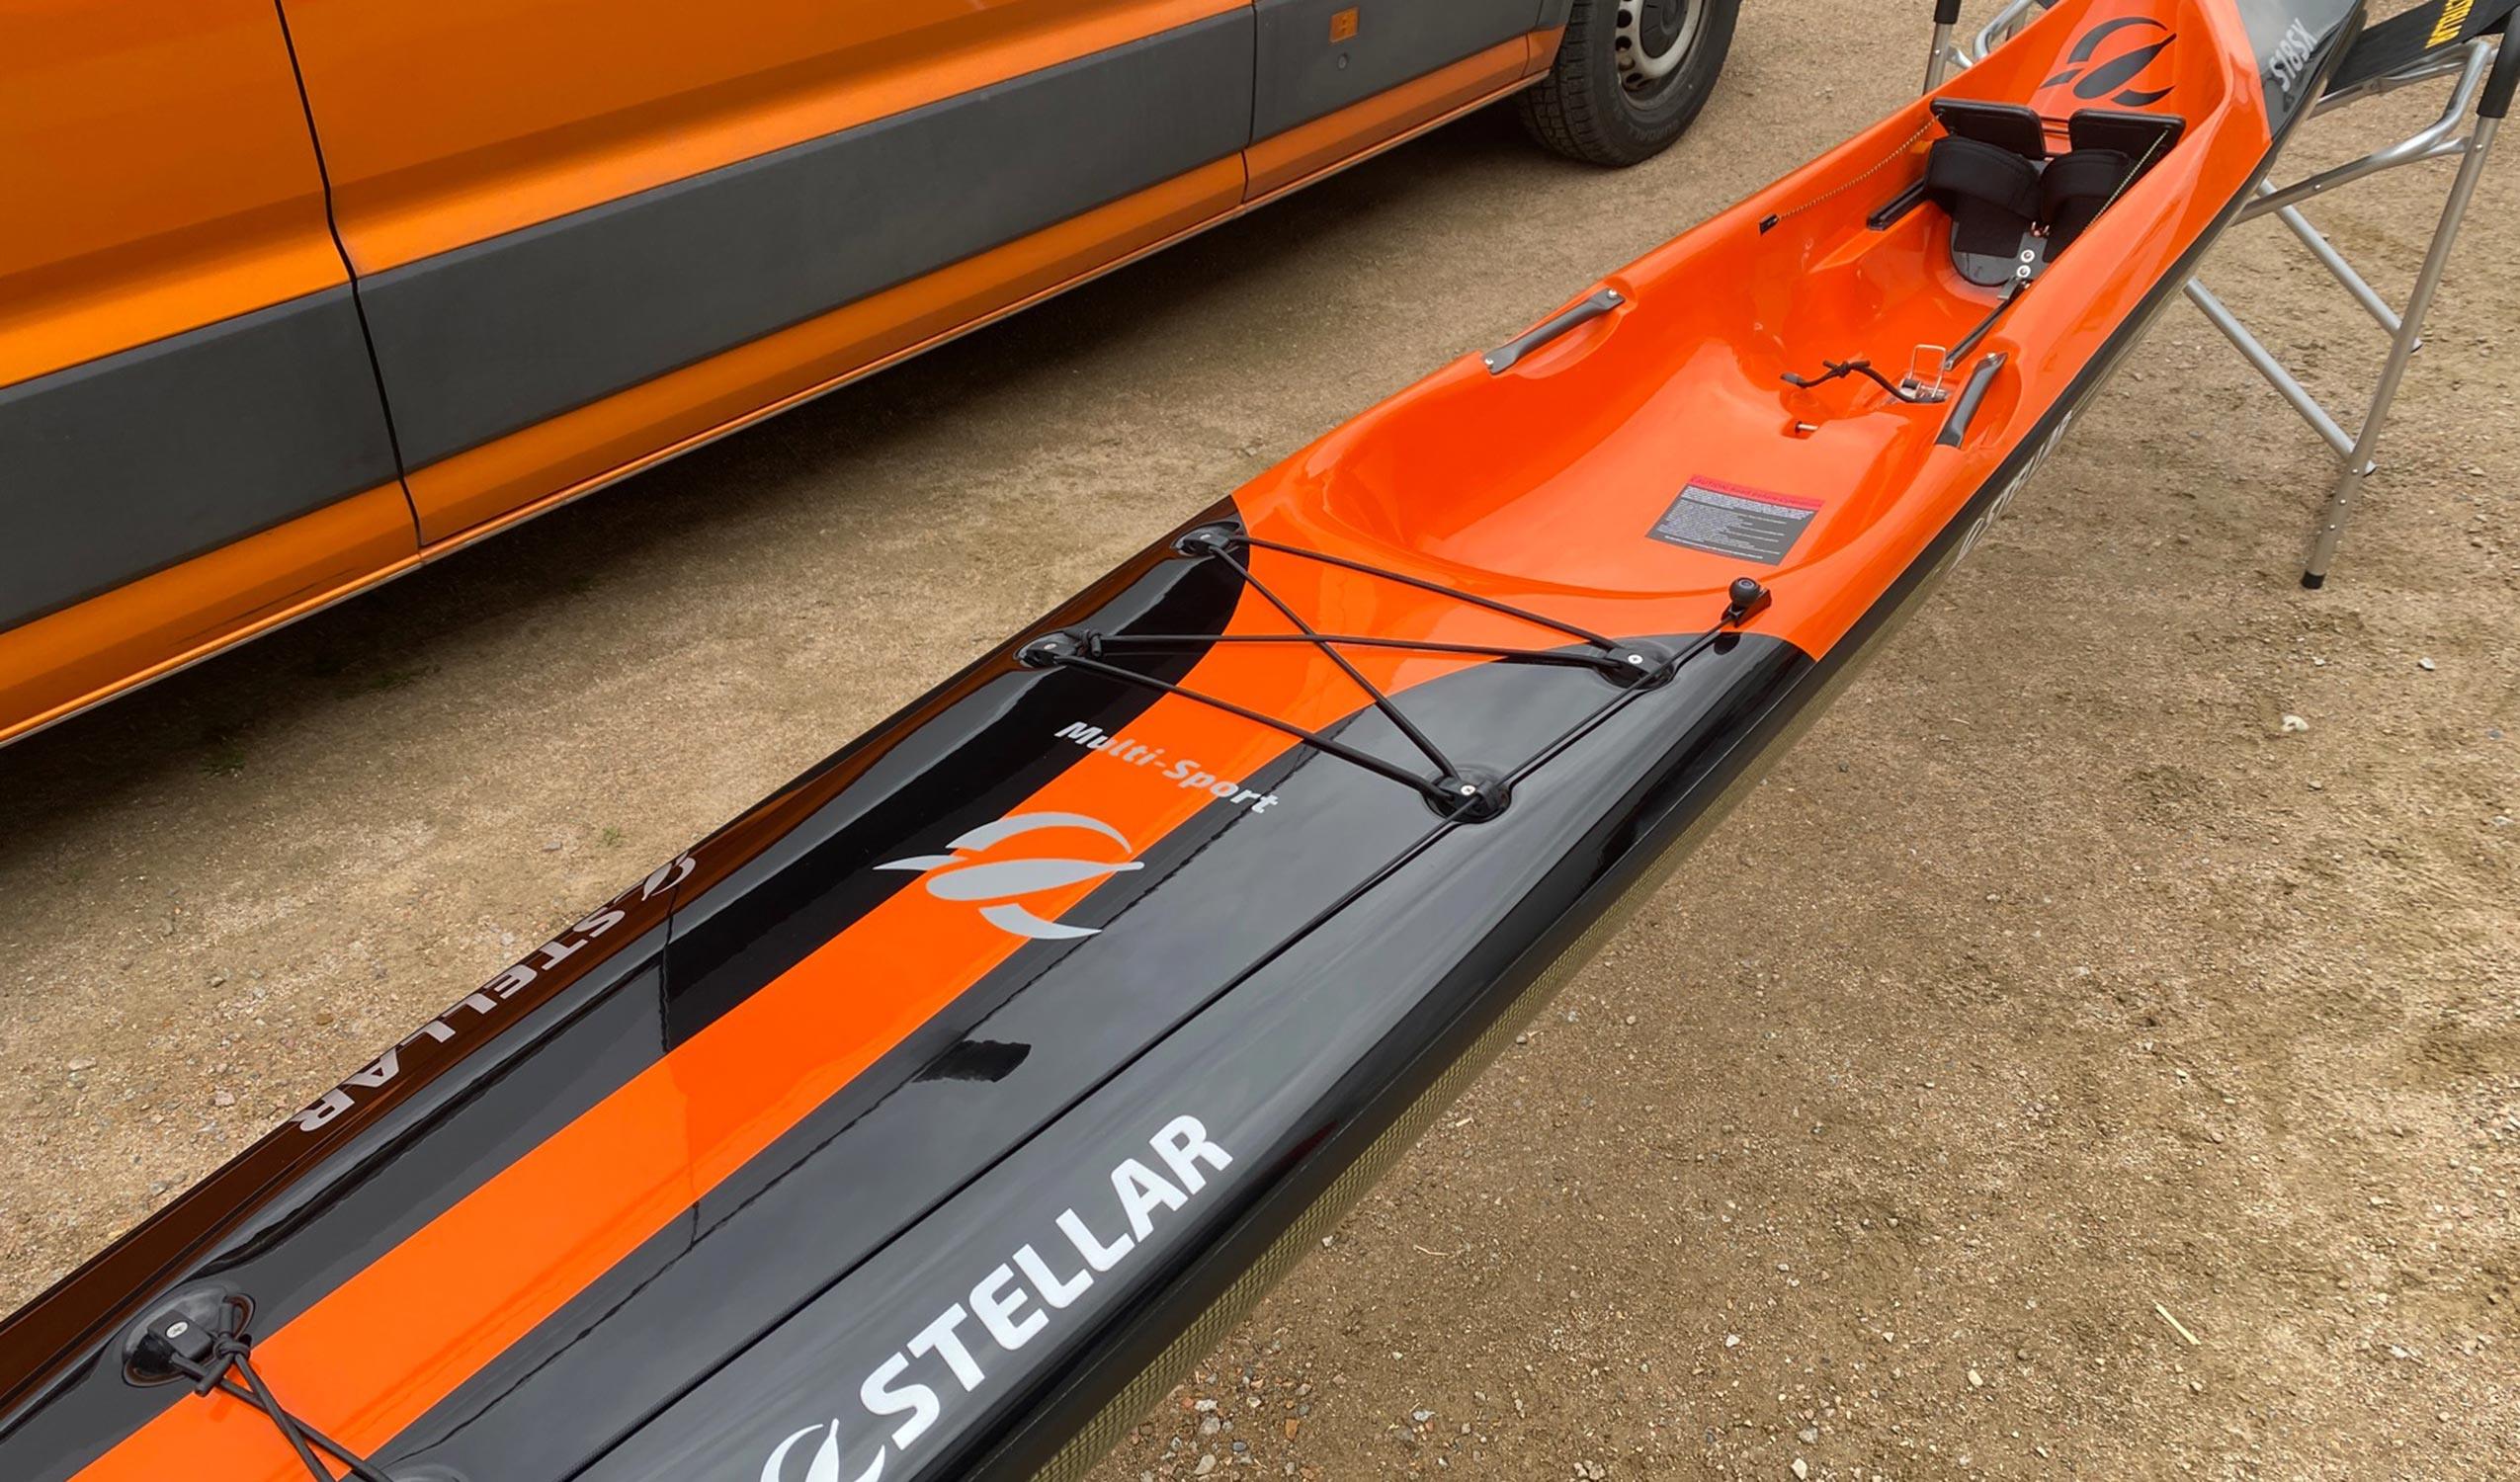 Produktbild von Kajak " S18S X Multisport-schwarz orange " der Marke STELLAR Lightweight für 3390.00 €. Erhältlich online bei Lite Venture ( www.liteventure.de )